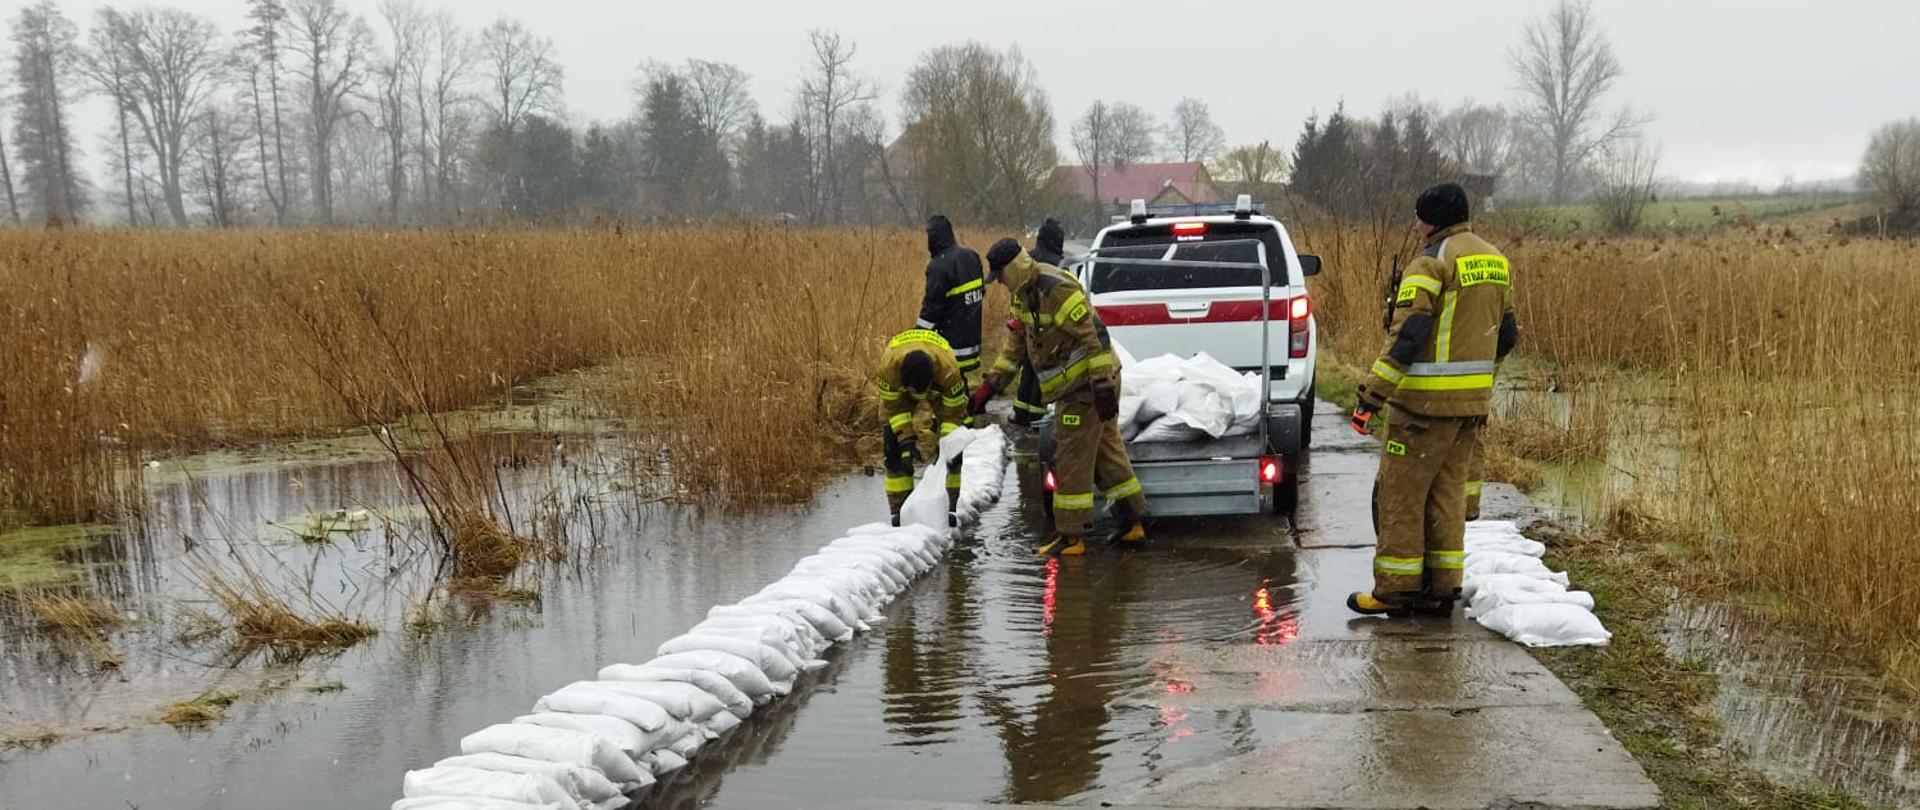 Państwowa Straż Pożarna wraz z jednostkami Ochotniczych Straży Pożarnych prowadziła działania mające na celu zapobiec zalaniu terenów mieszkalnych oraz dróg dojazdowych do miejscowości Płastkowo